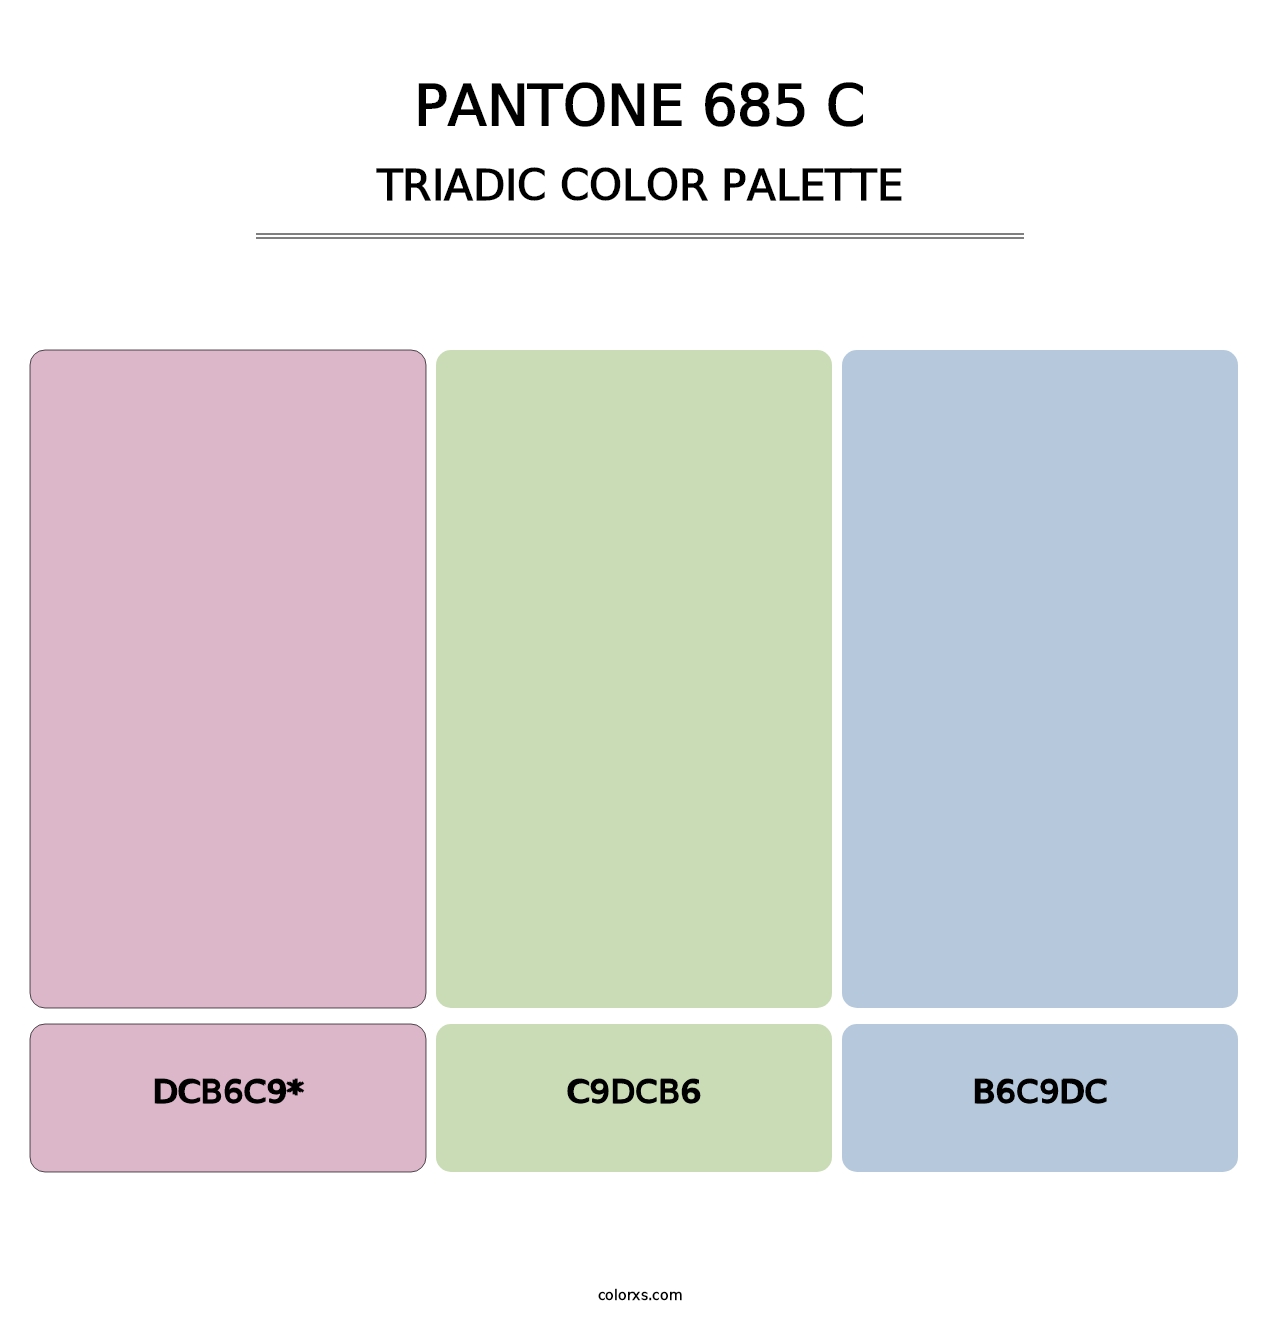 PANTONE 685 C - Triadic Color Palette